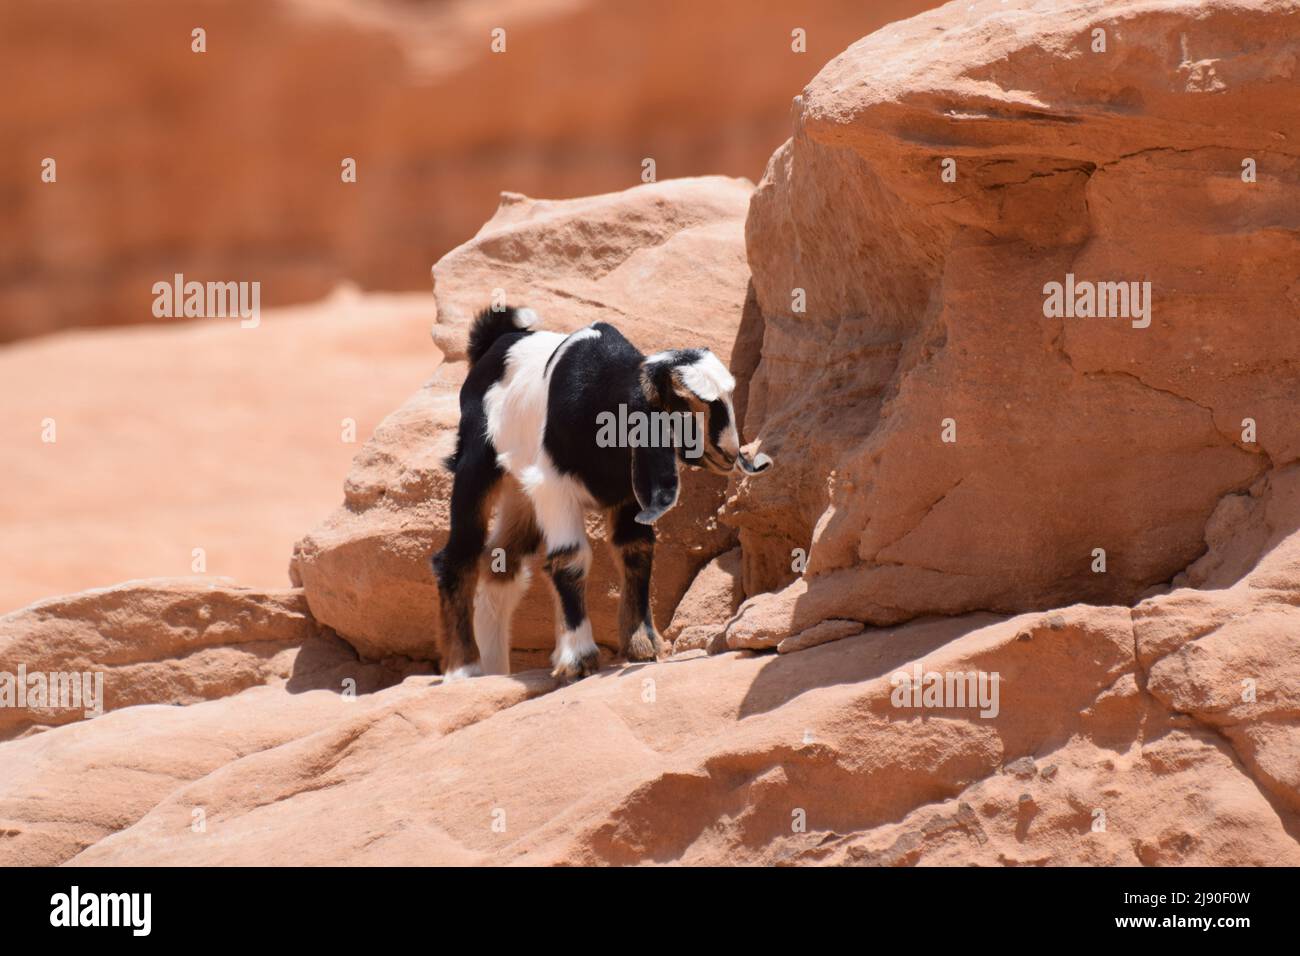 Une petite chèvre noire et blanche sur des rochers désertiques Banque D'Images